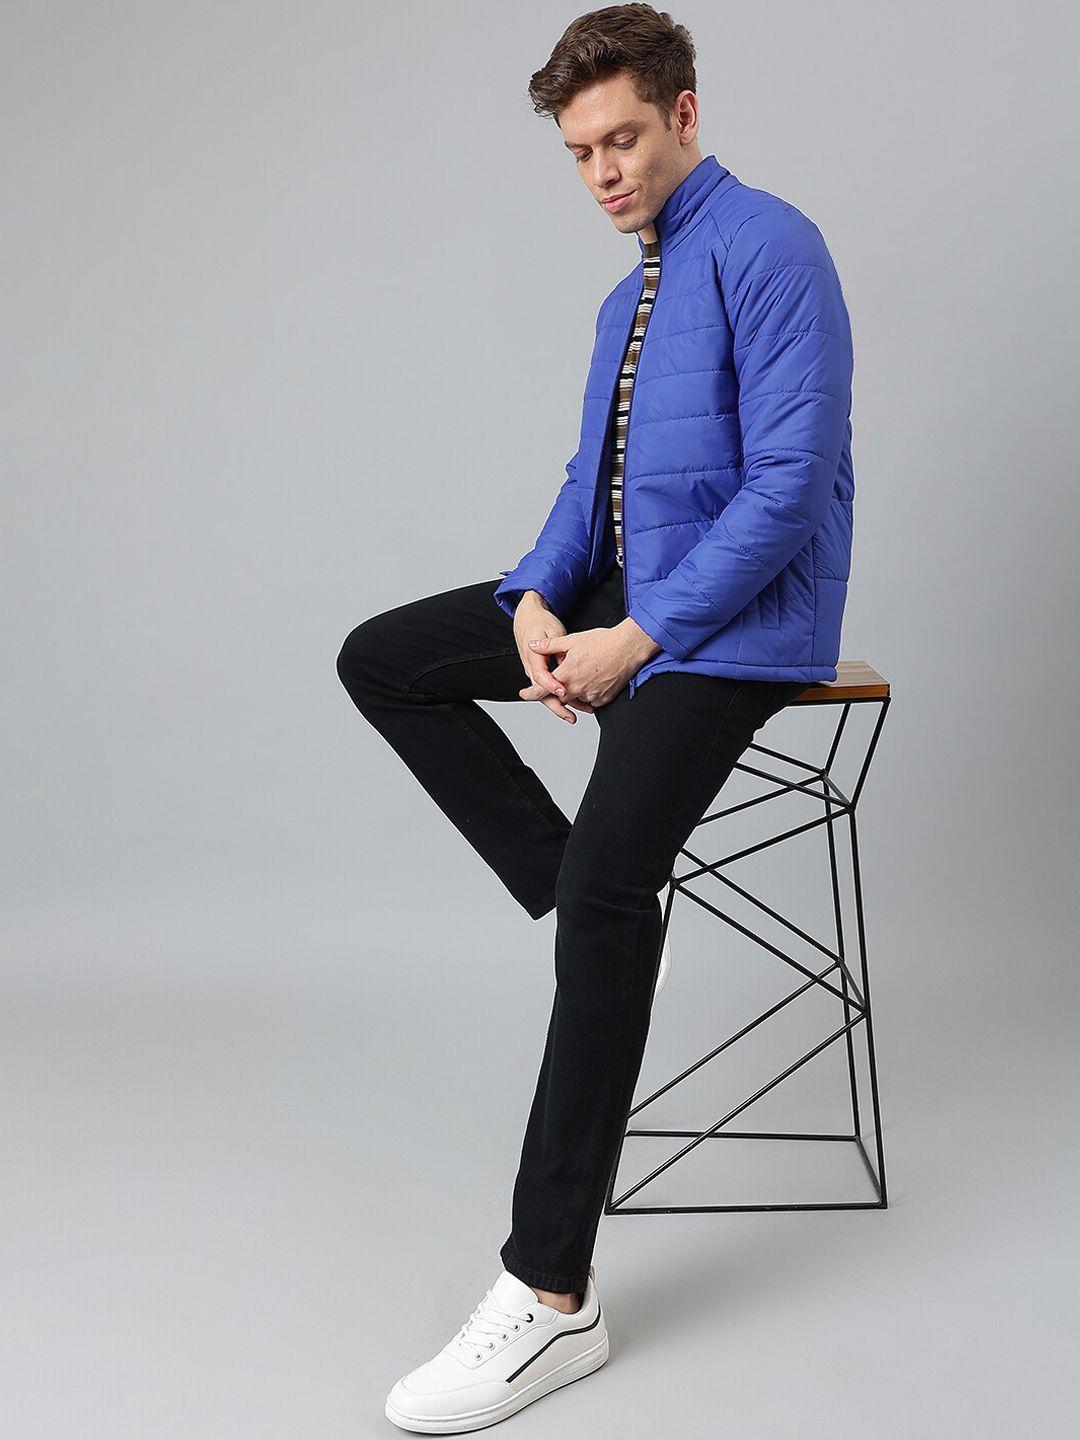 hubberholme-men-blue-striped-lightweight-longline-outdoor-padded-jacket